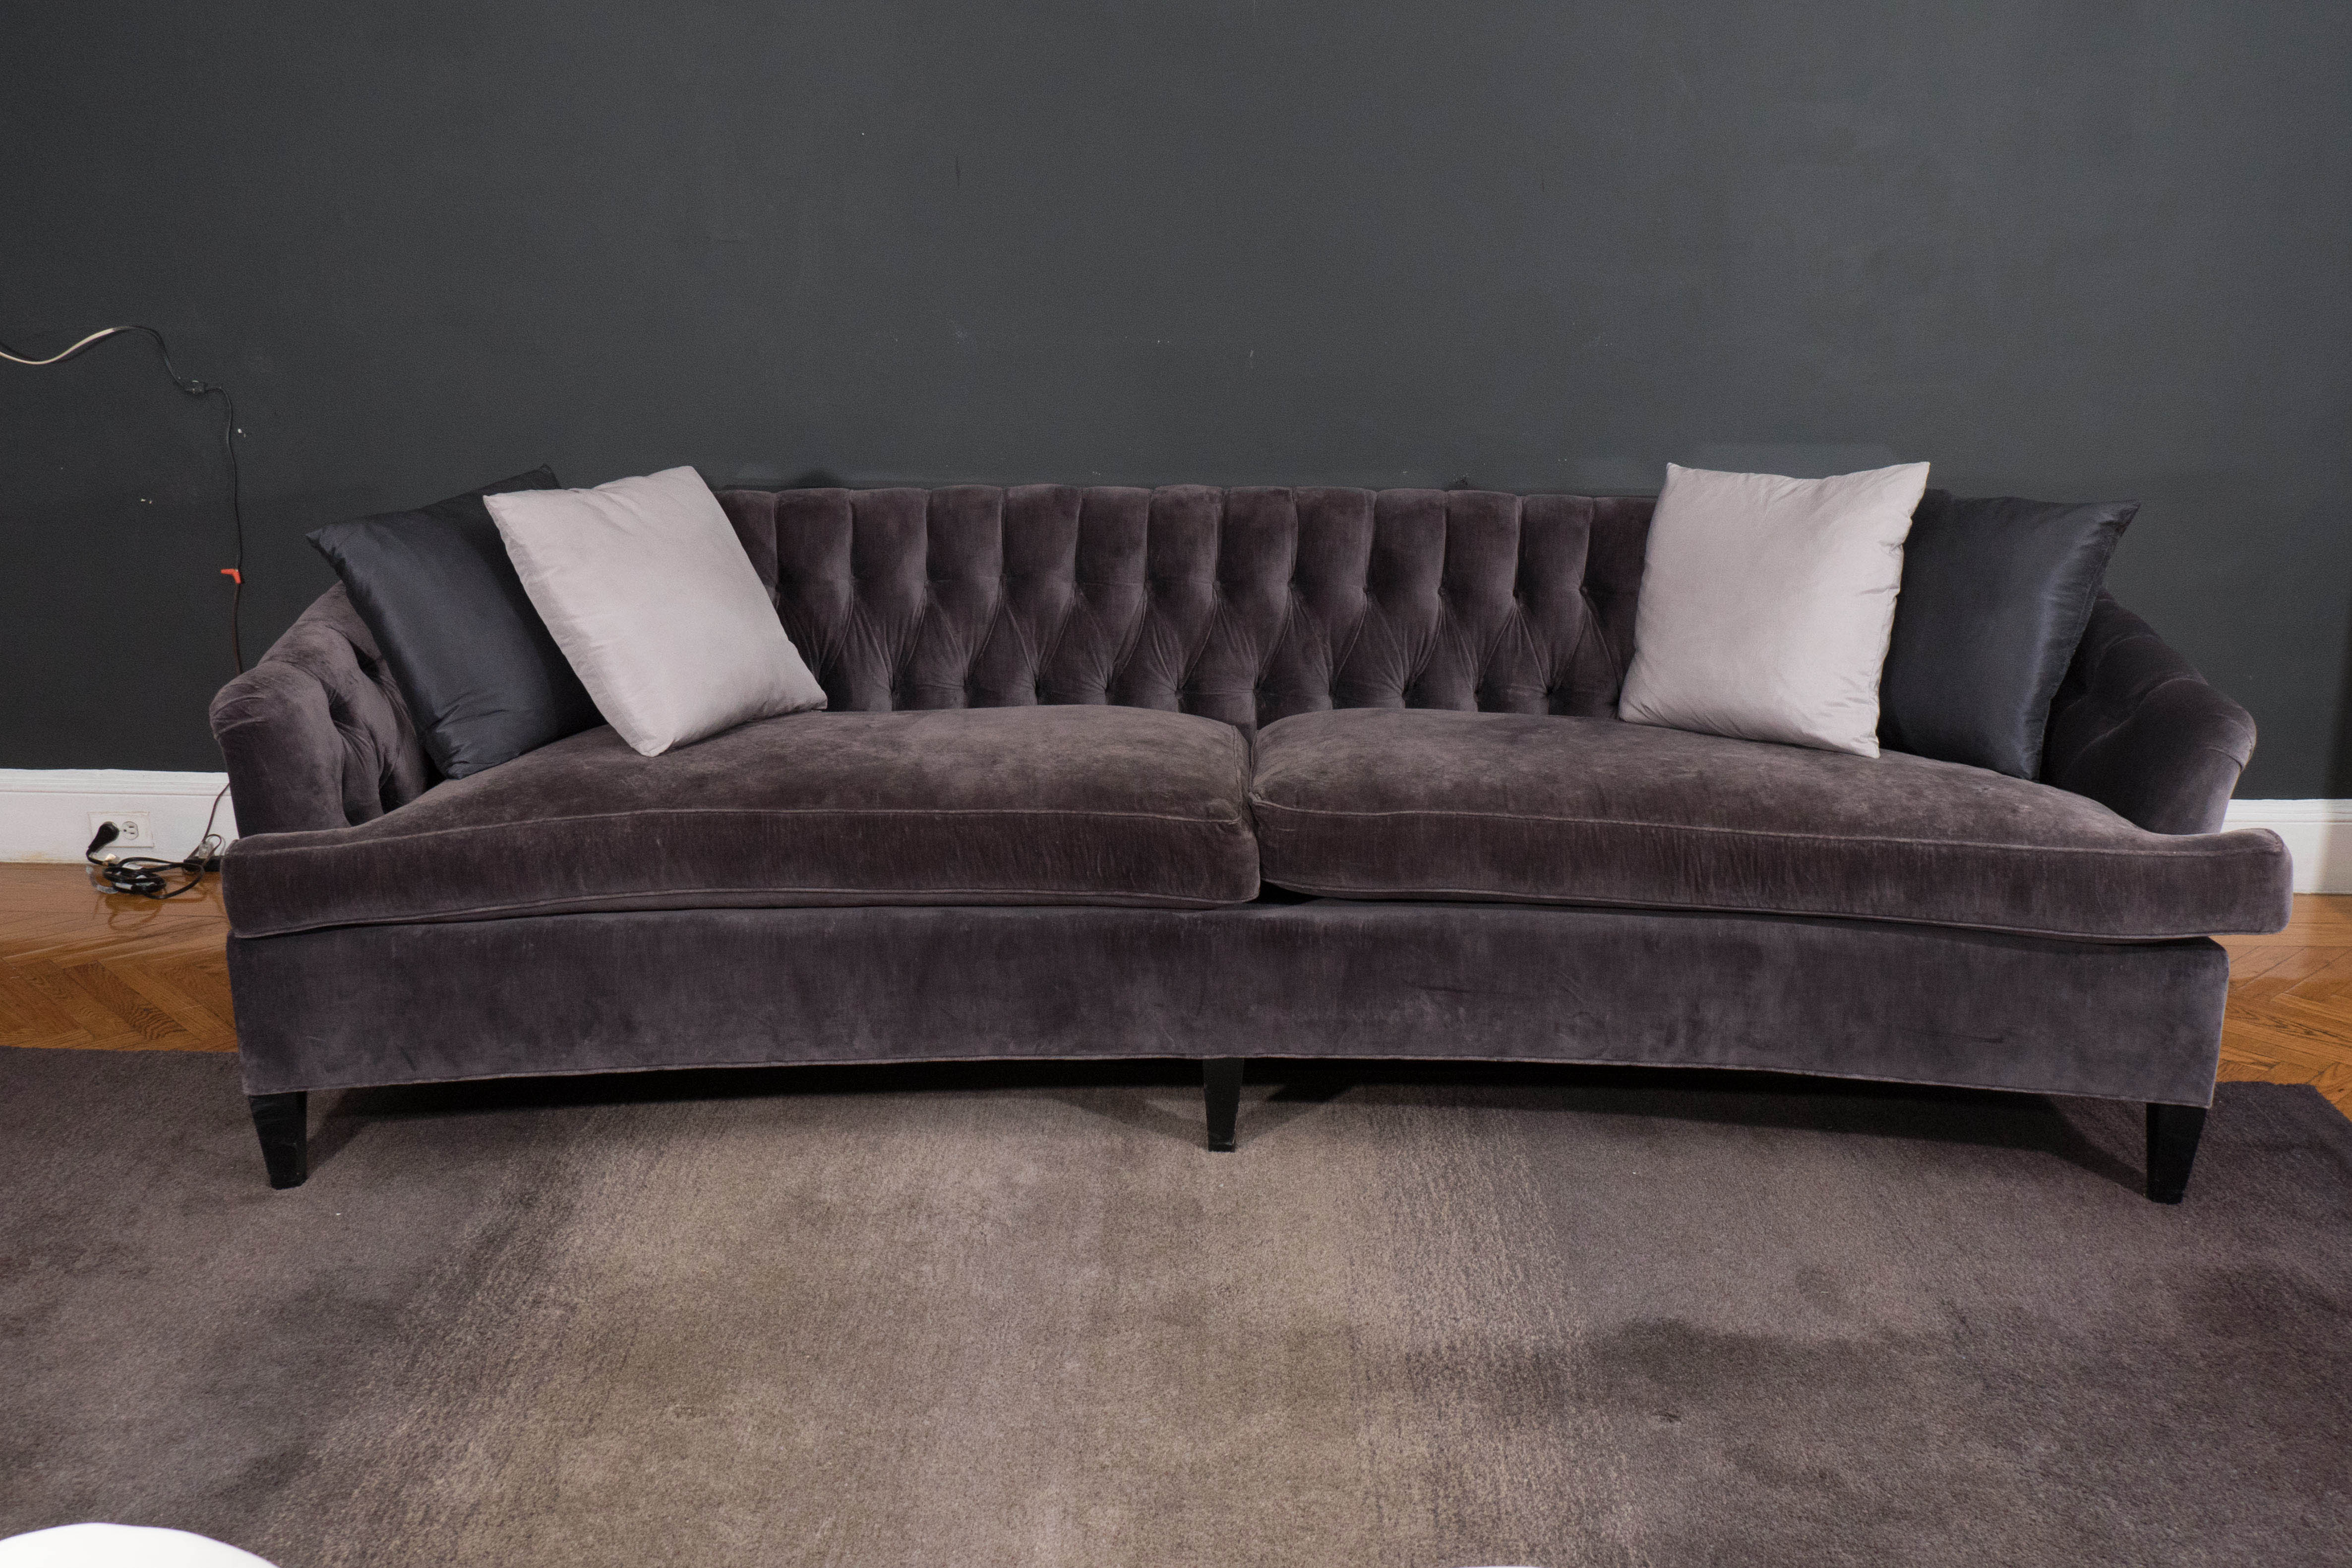 Hollywood Regency vintage tufted curved sofa in grey velvet.